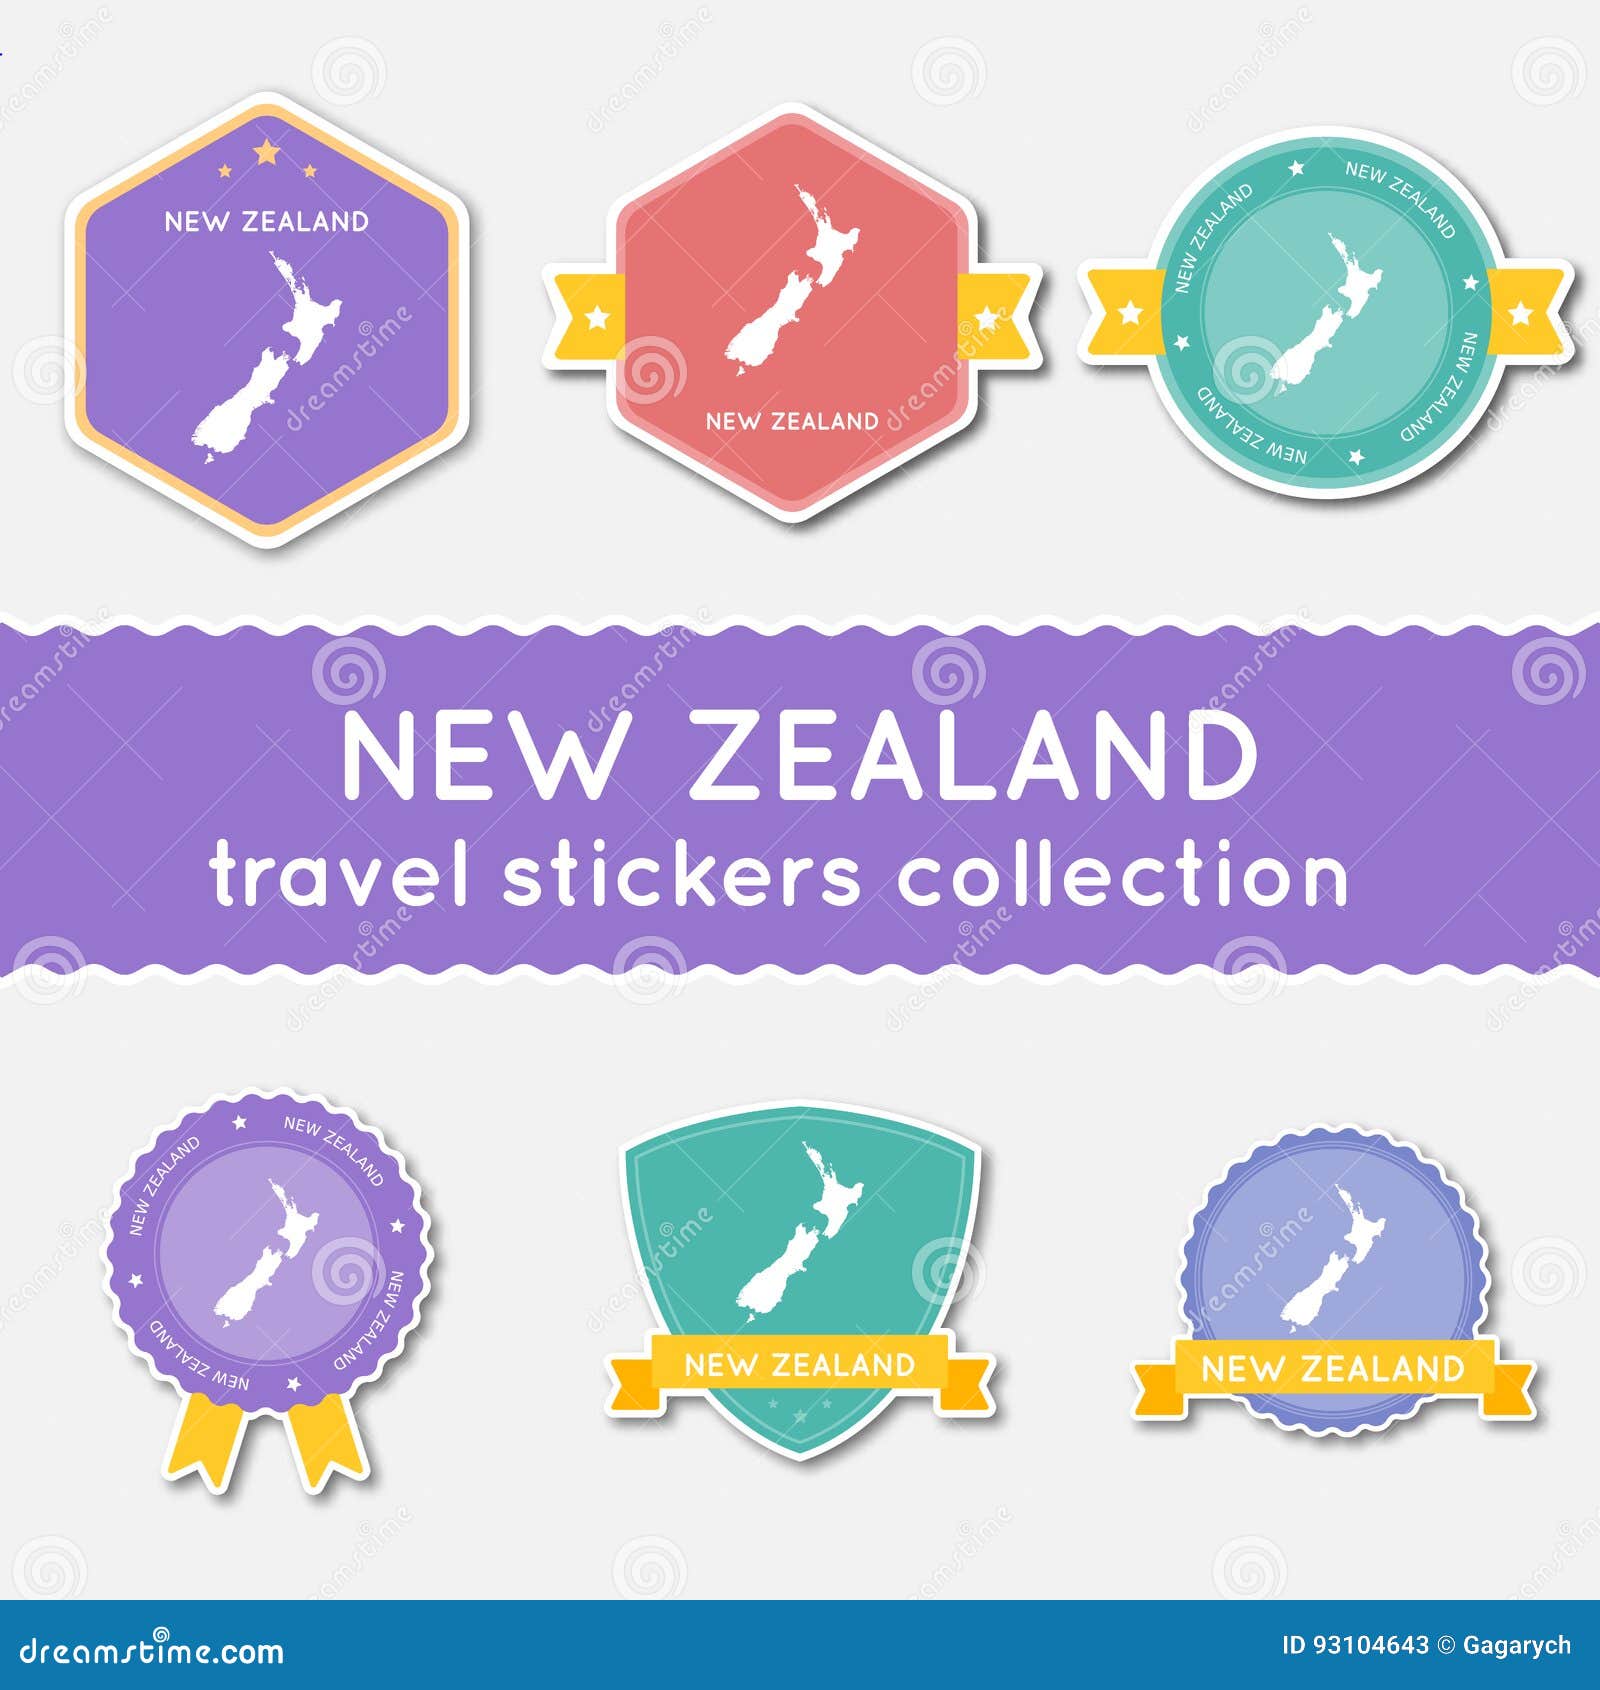 travel stickers nz